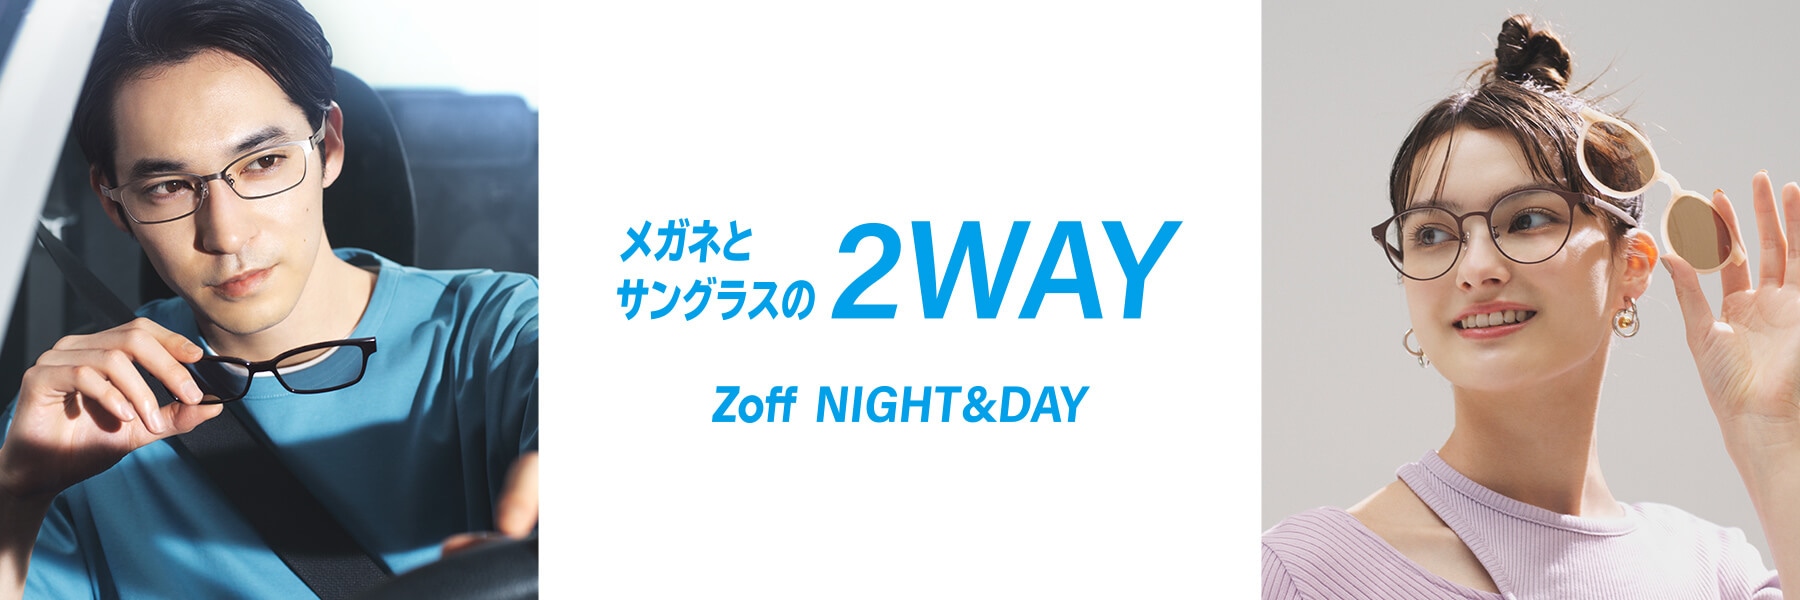 Zoff NIGHT&DAY